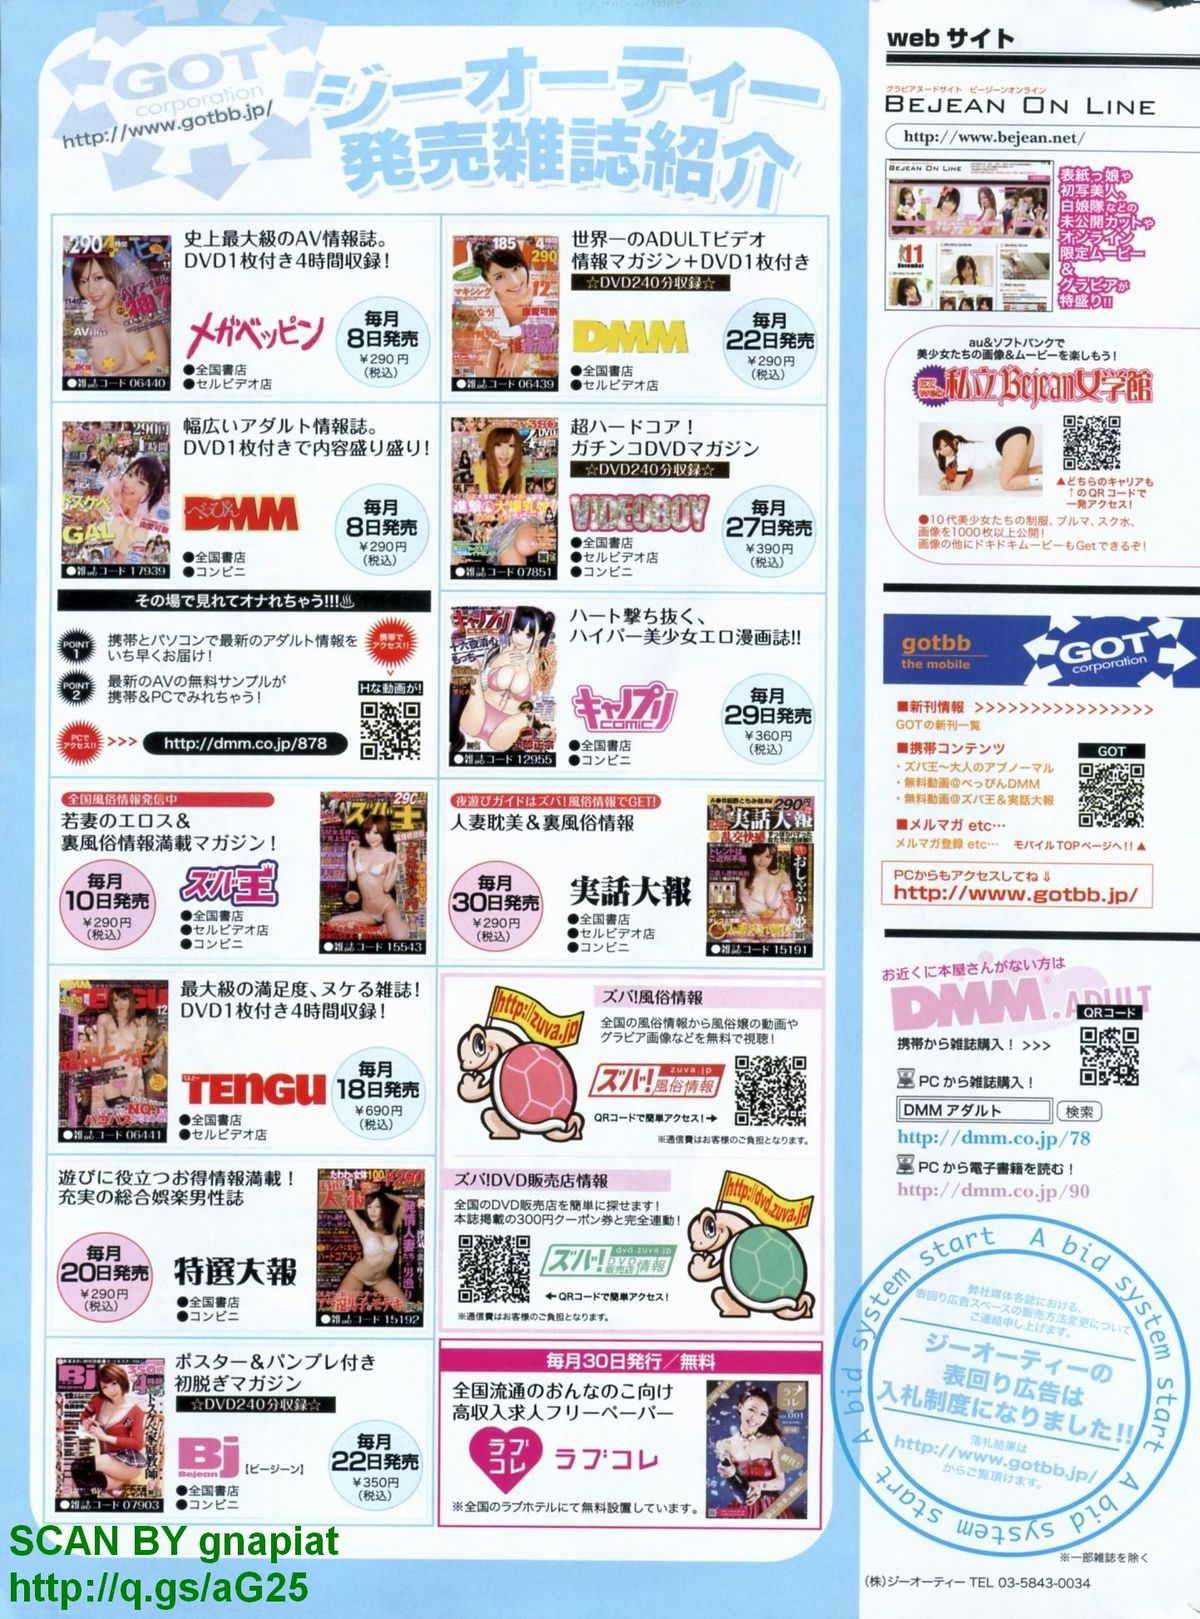 キャノプリcomic 2011年 12月号 Vol.14